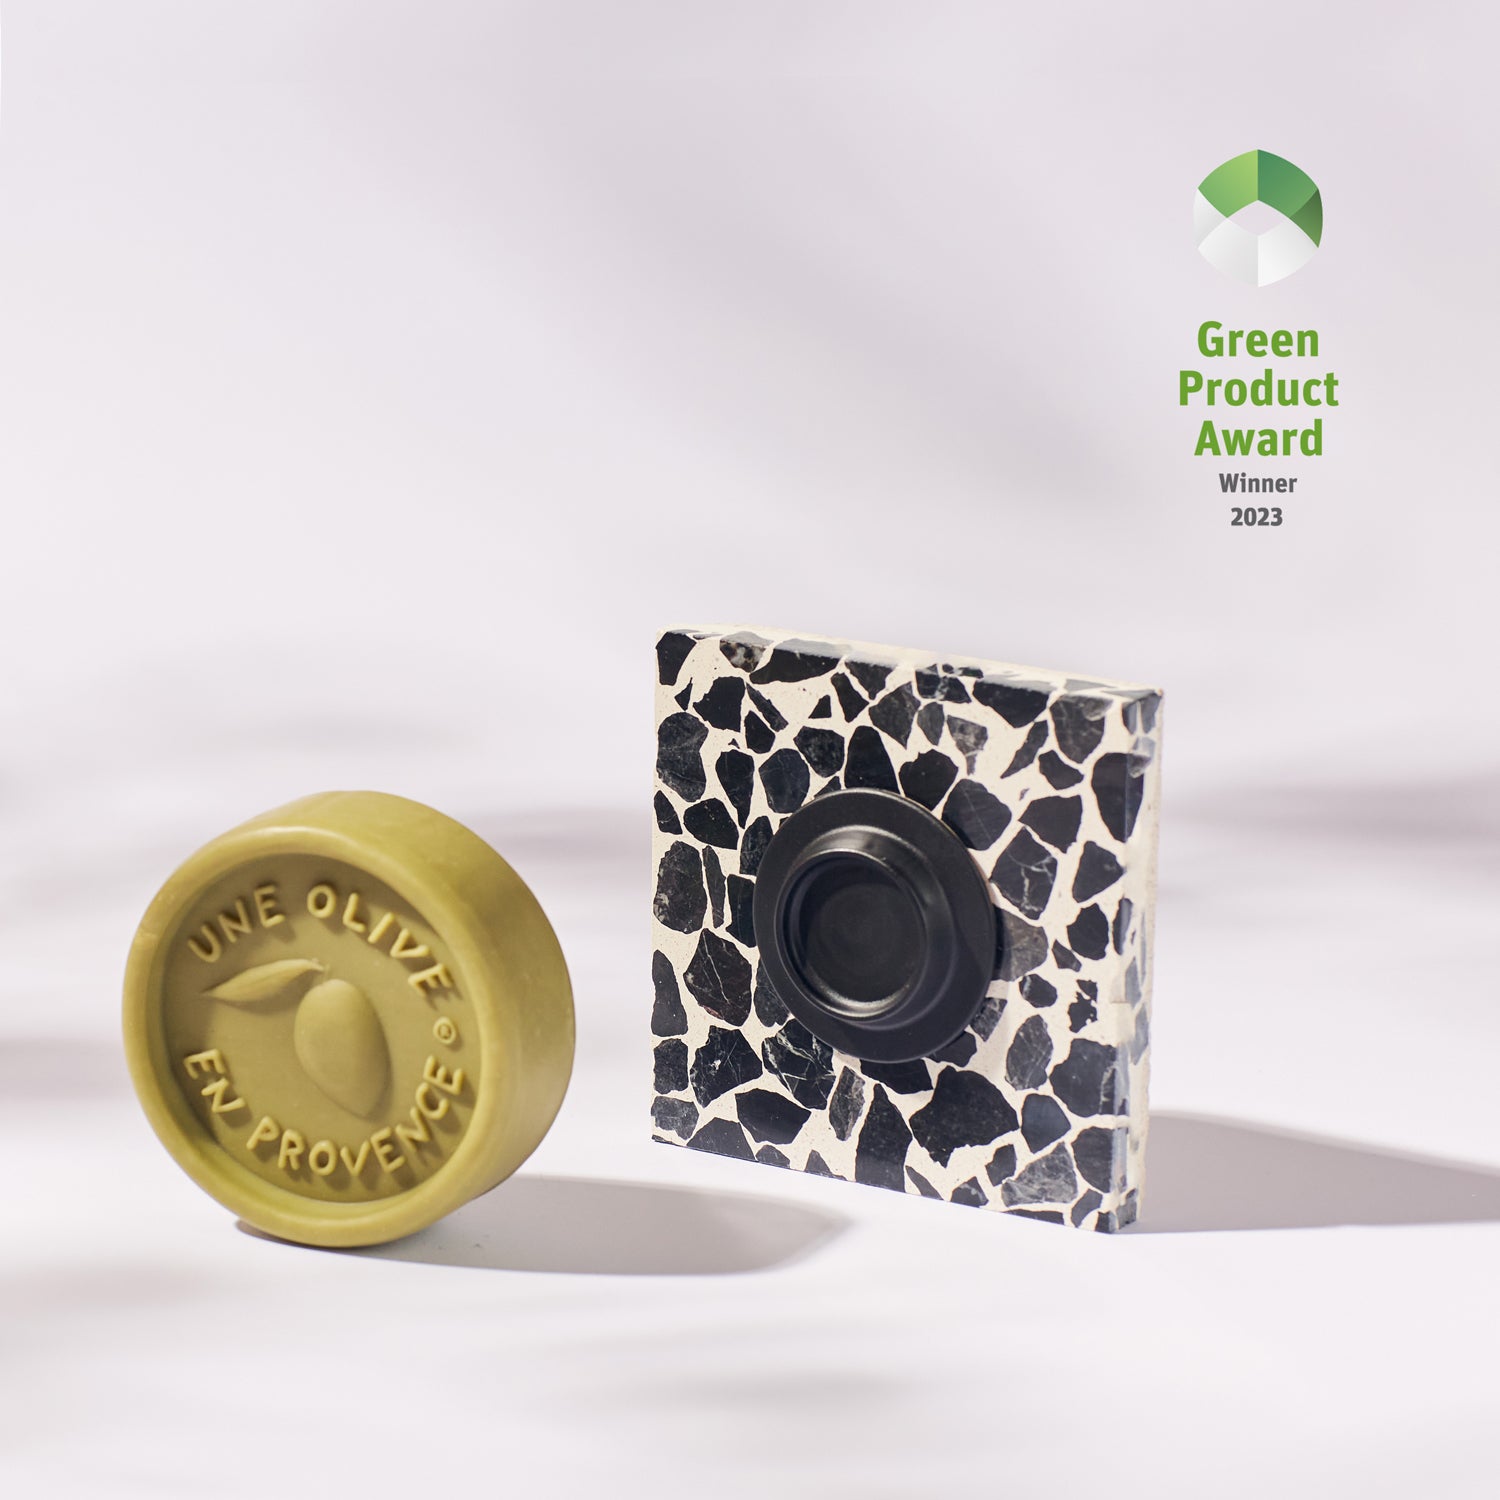 Magnetischer Seifenhalter in Schwarz und eine Olivenöl Seife Gewinner des Green Product Award 2023